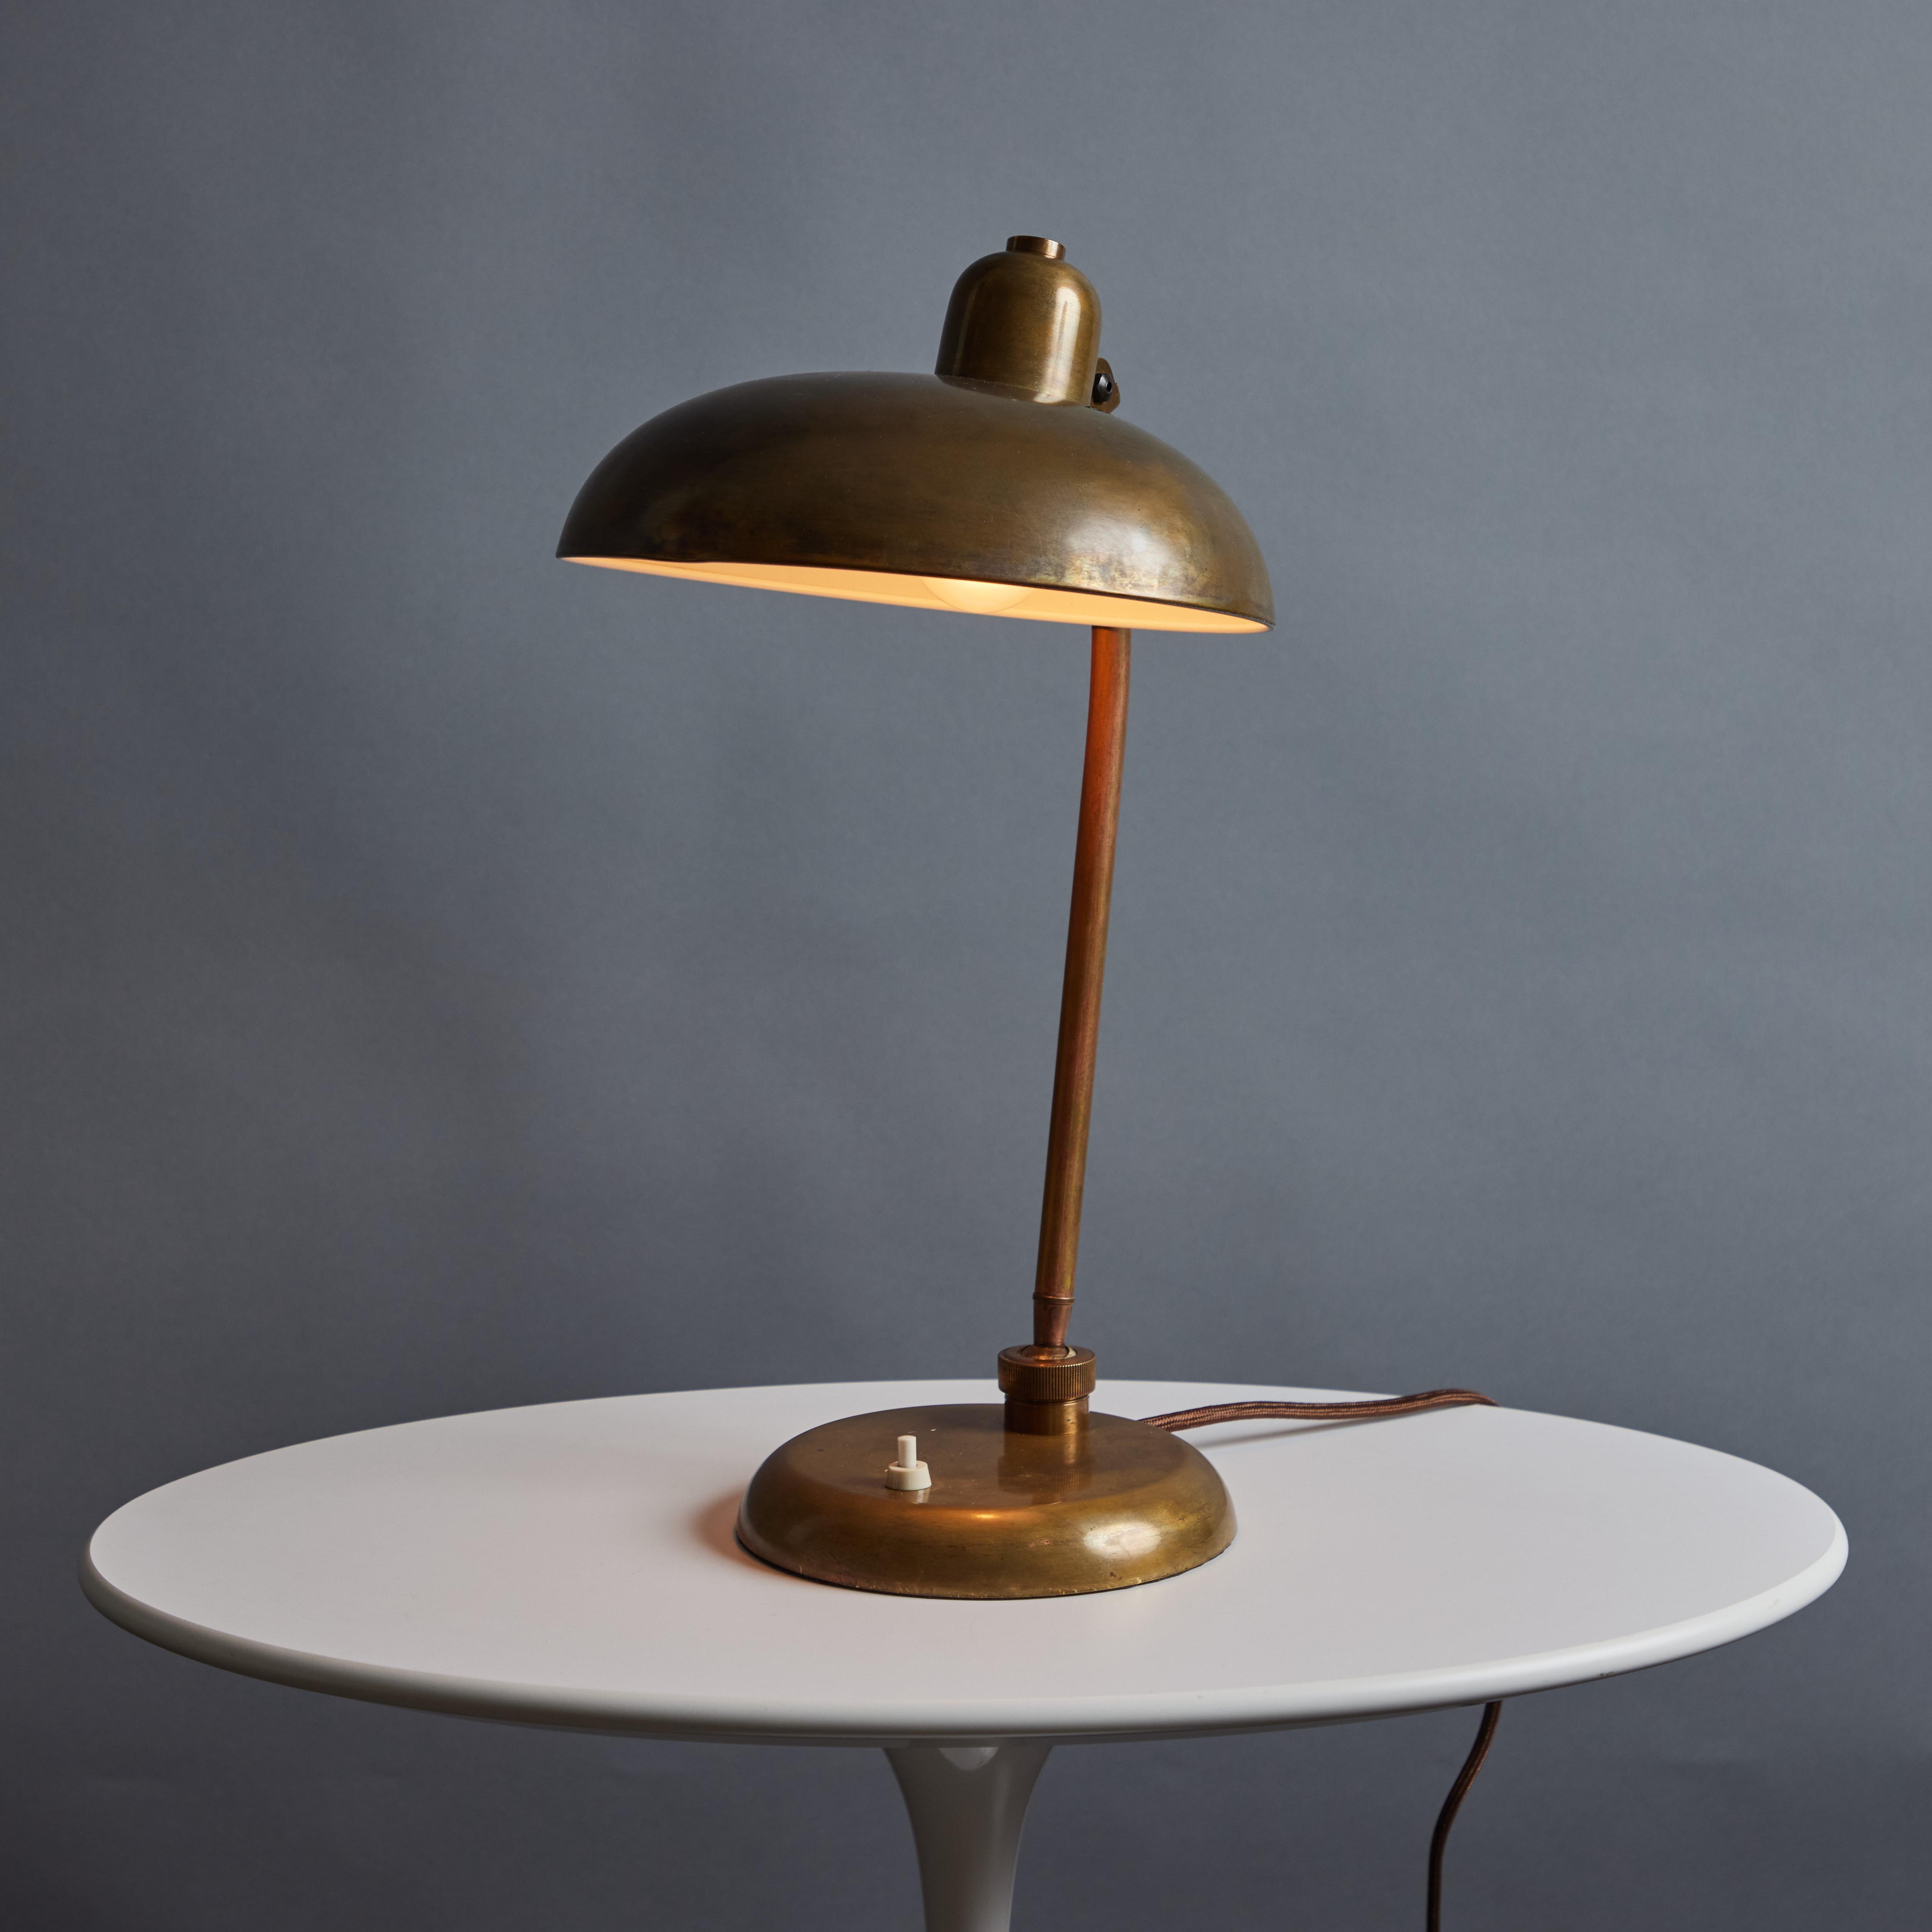 Messing-Tischlampe von Giovanni Michelucci aus den 1940er Jahren für Lariolux. CIRCA 1940 hergestellt, aus reich patiniertem Messing, mit schwenkbarem Arm und drehbarem, verstellbarem Schirm. Erinnert an die frühen Entwürfe von Kaiser Idell. Eine